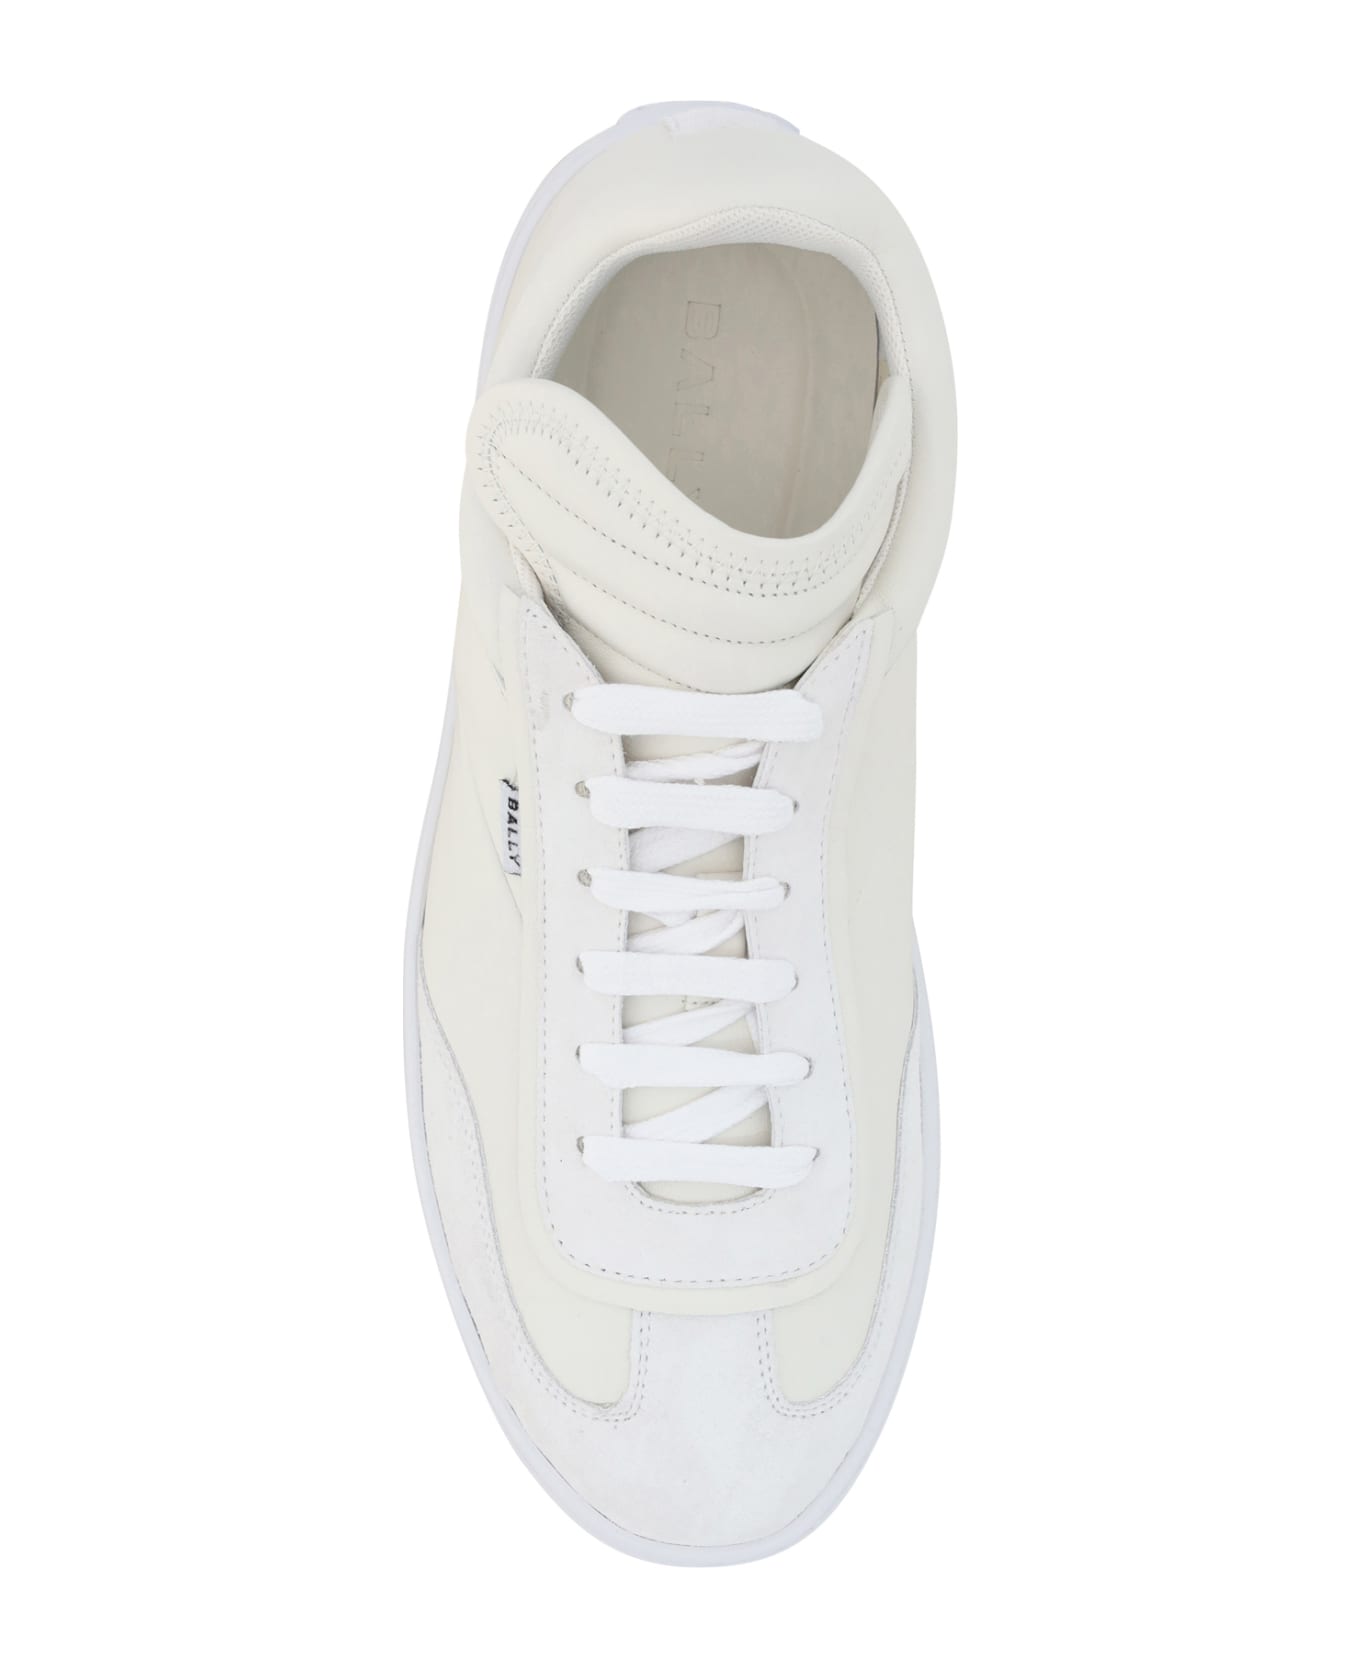 Bally Sneakers - White